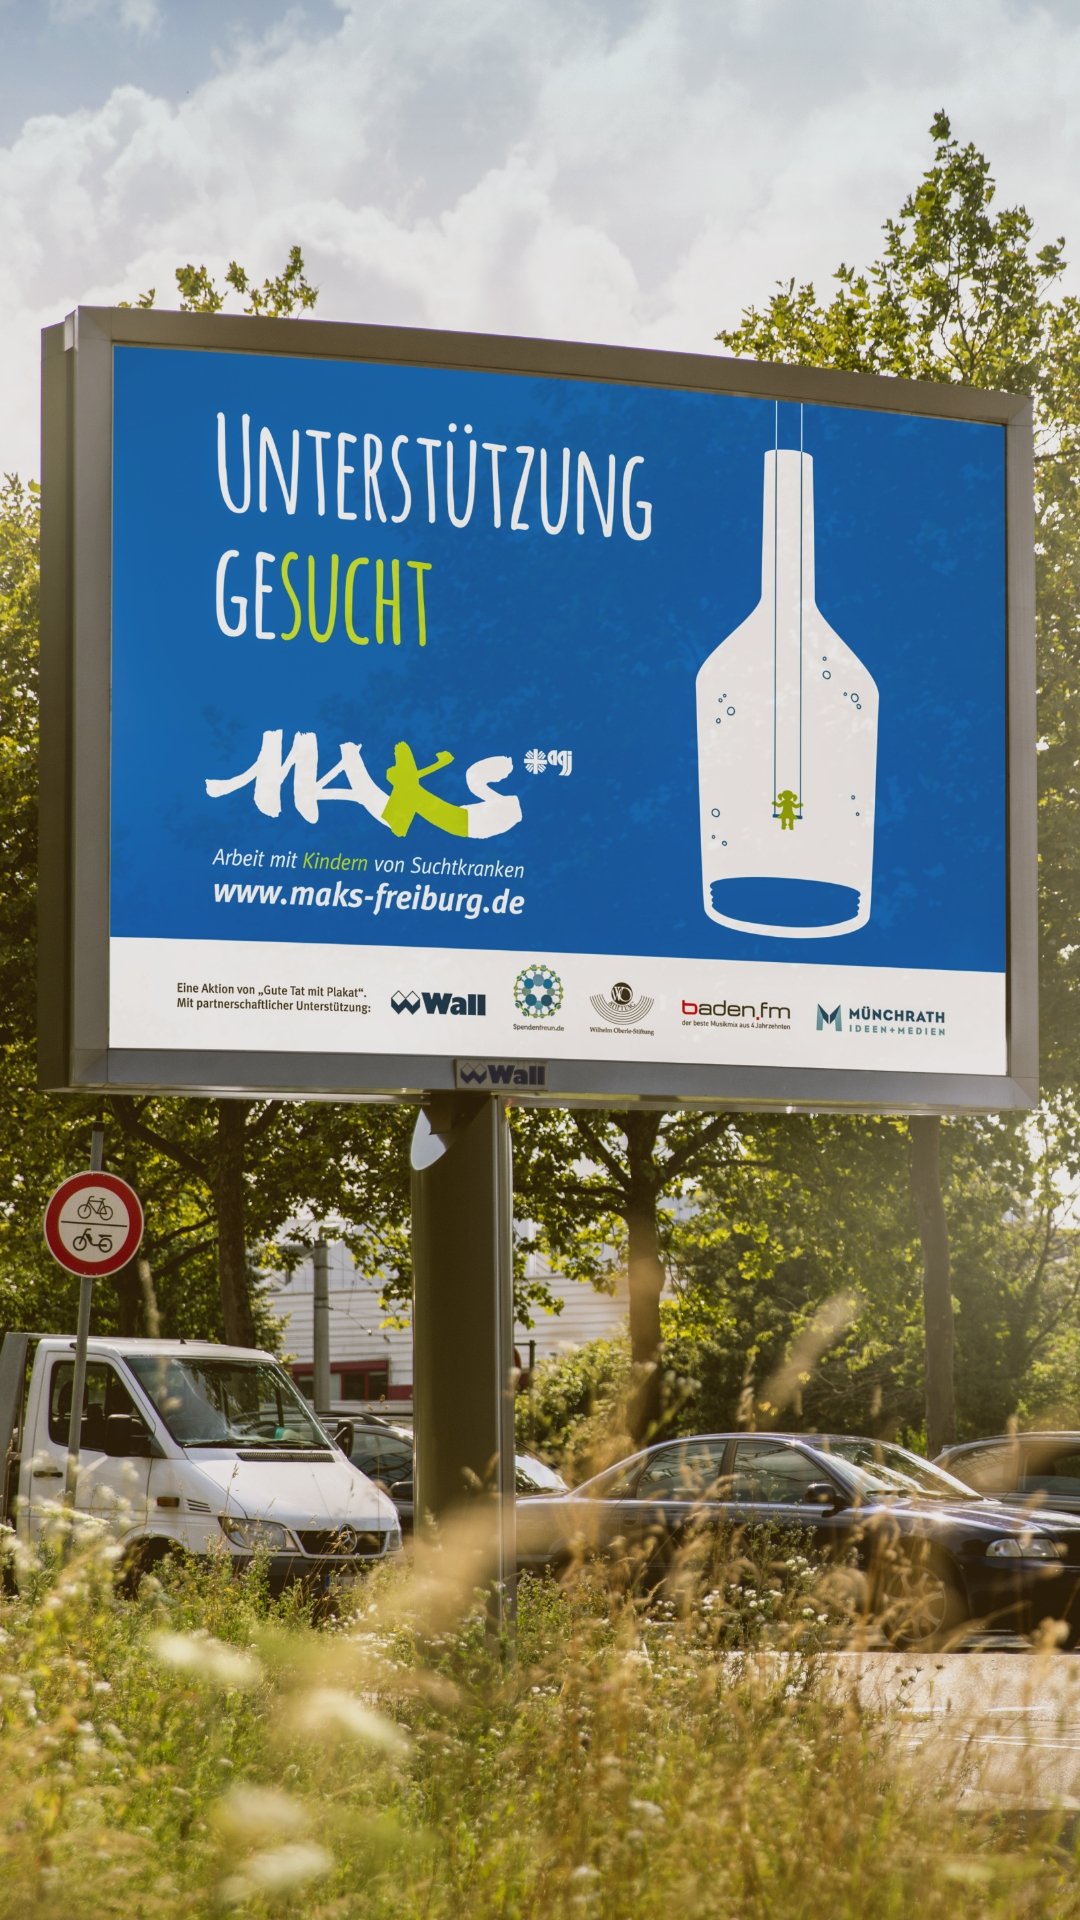 Plakatierung im Grünstreifen an einer Straße